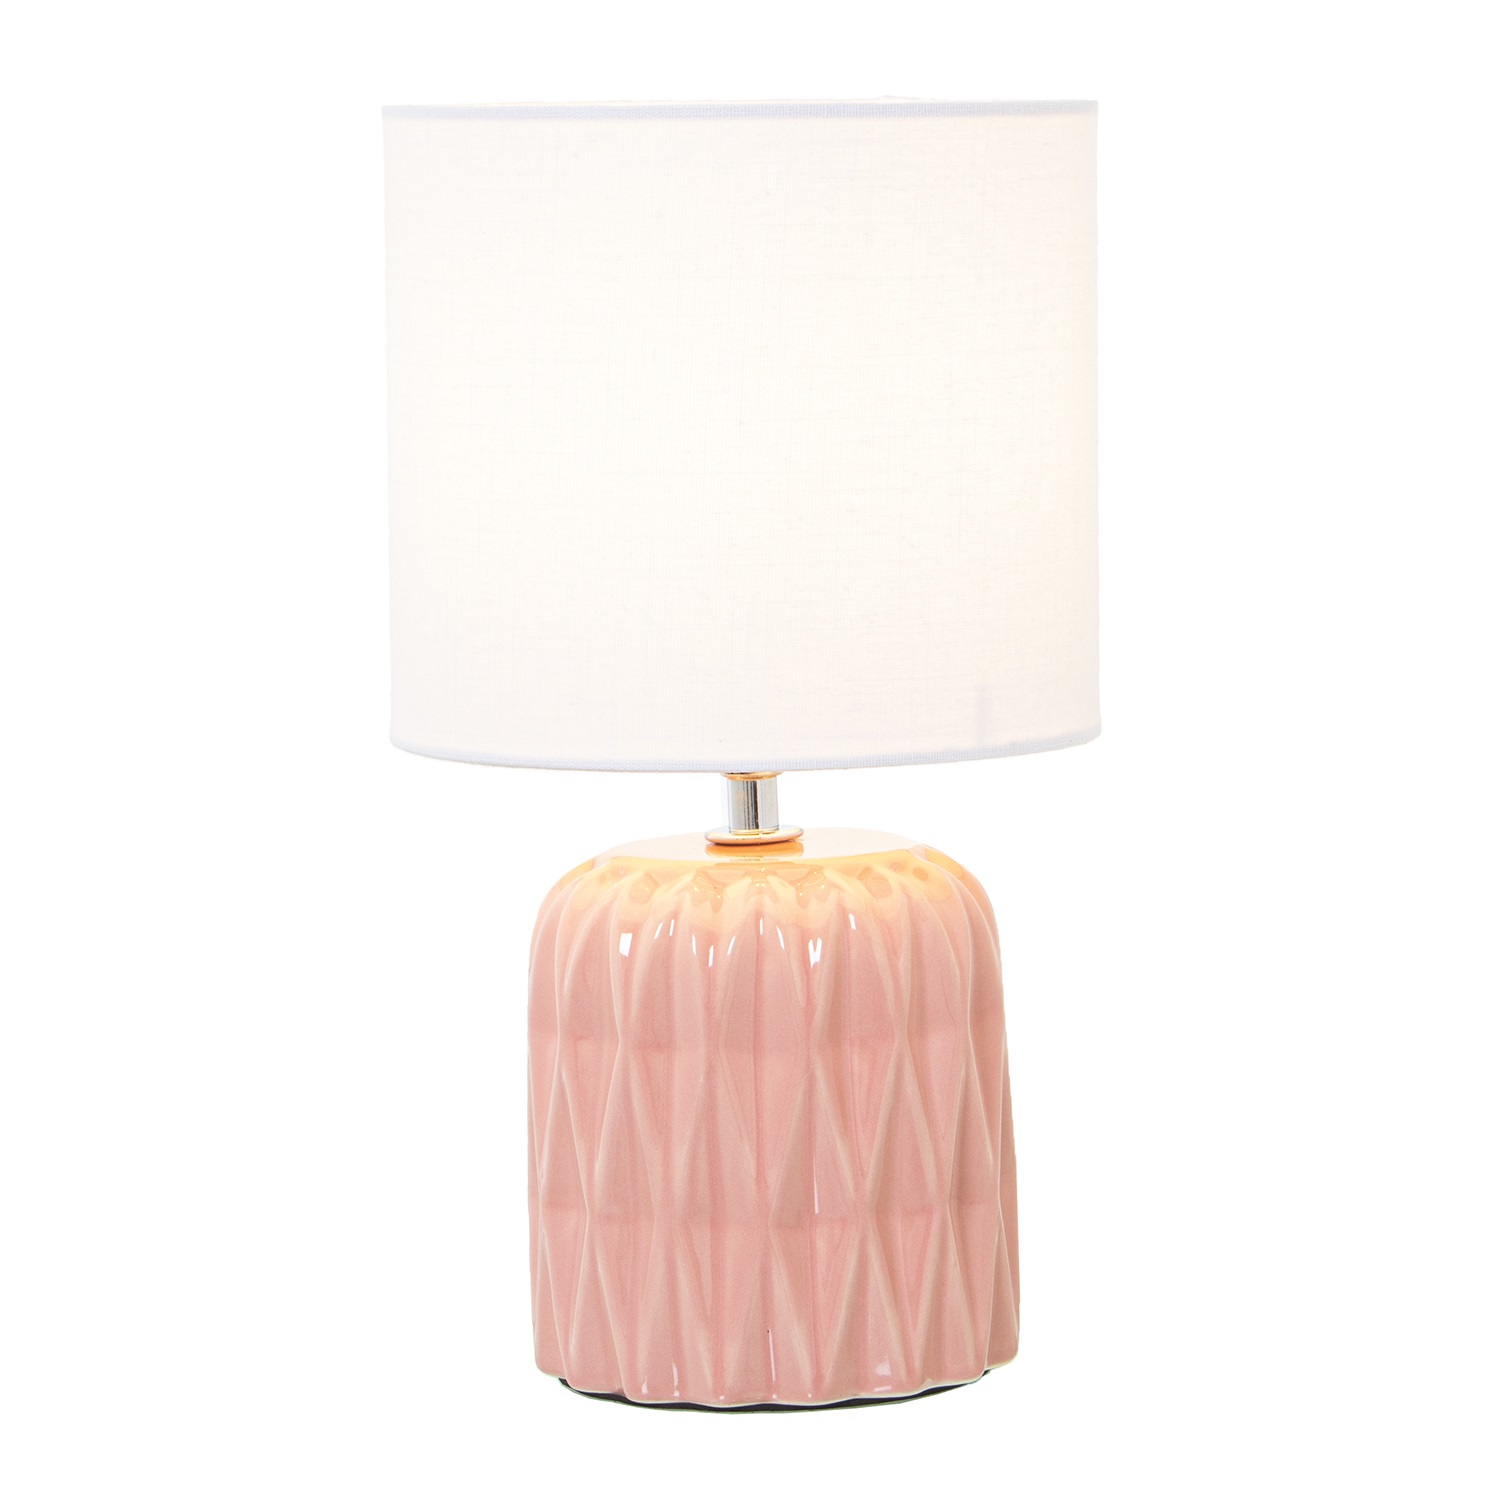 34060-lampara-ceramica-rosa-2.jpg